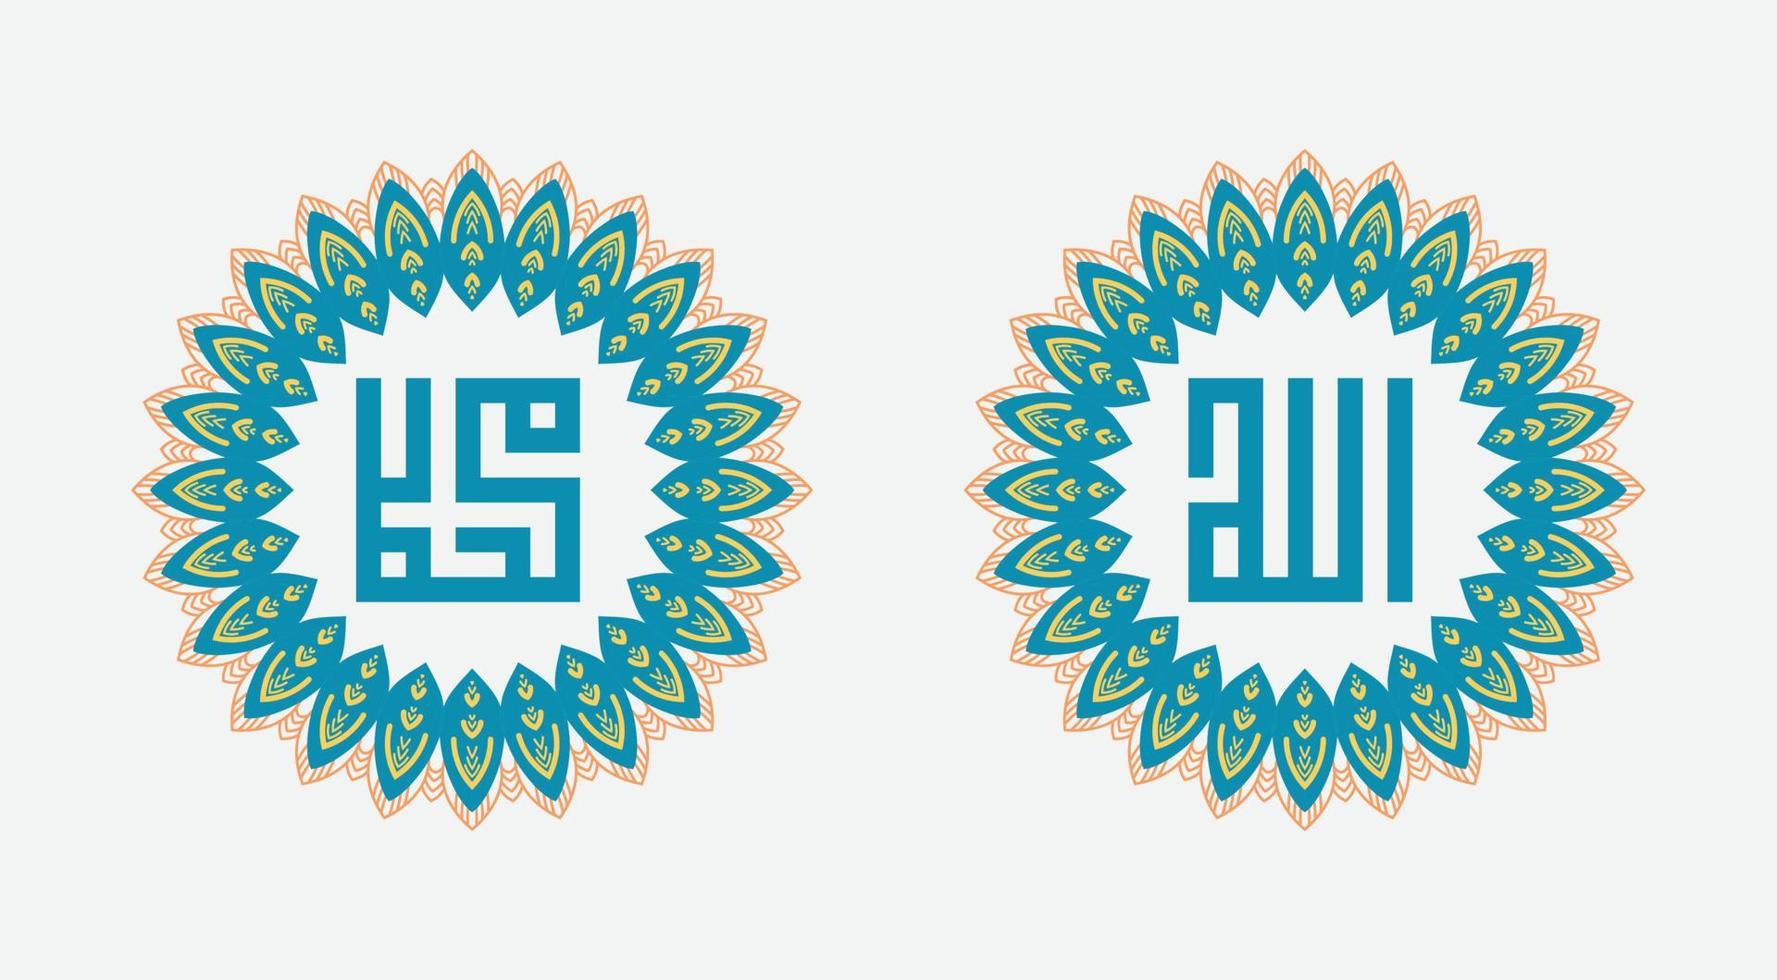 kalligraphie von allah und prophet mohammad. Verzierung auf weißem Hintergrund vektor